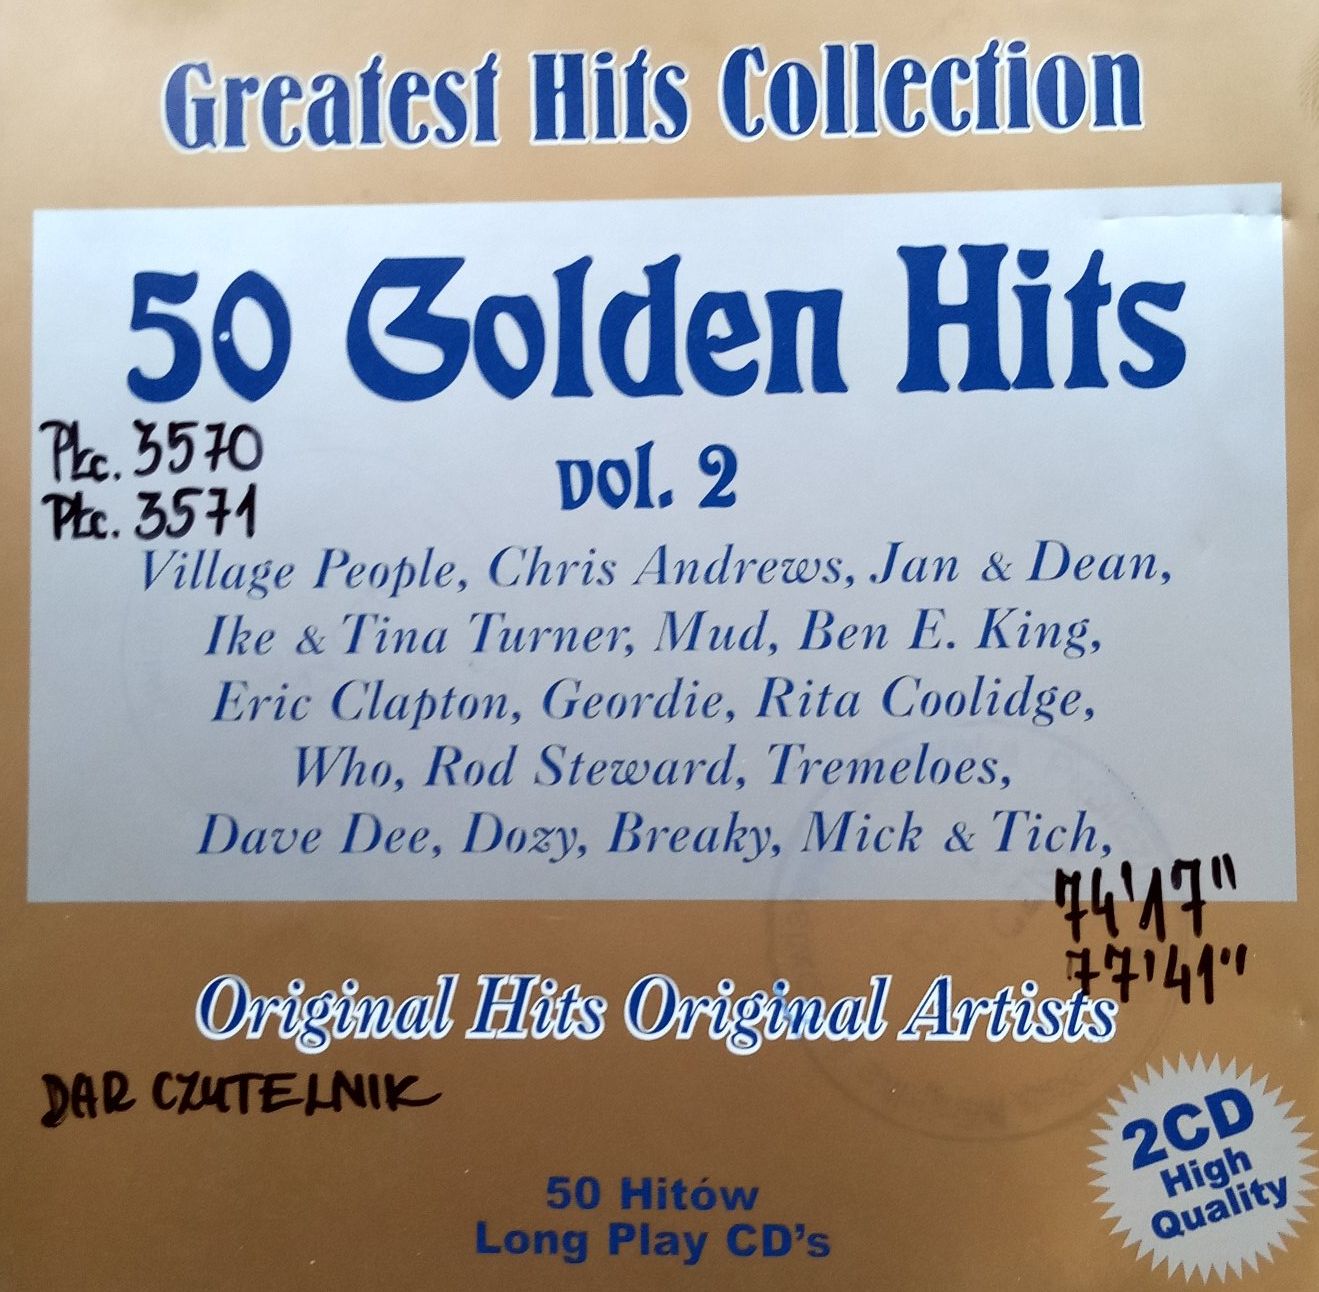 50 Golden Hits Vol. 2